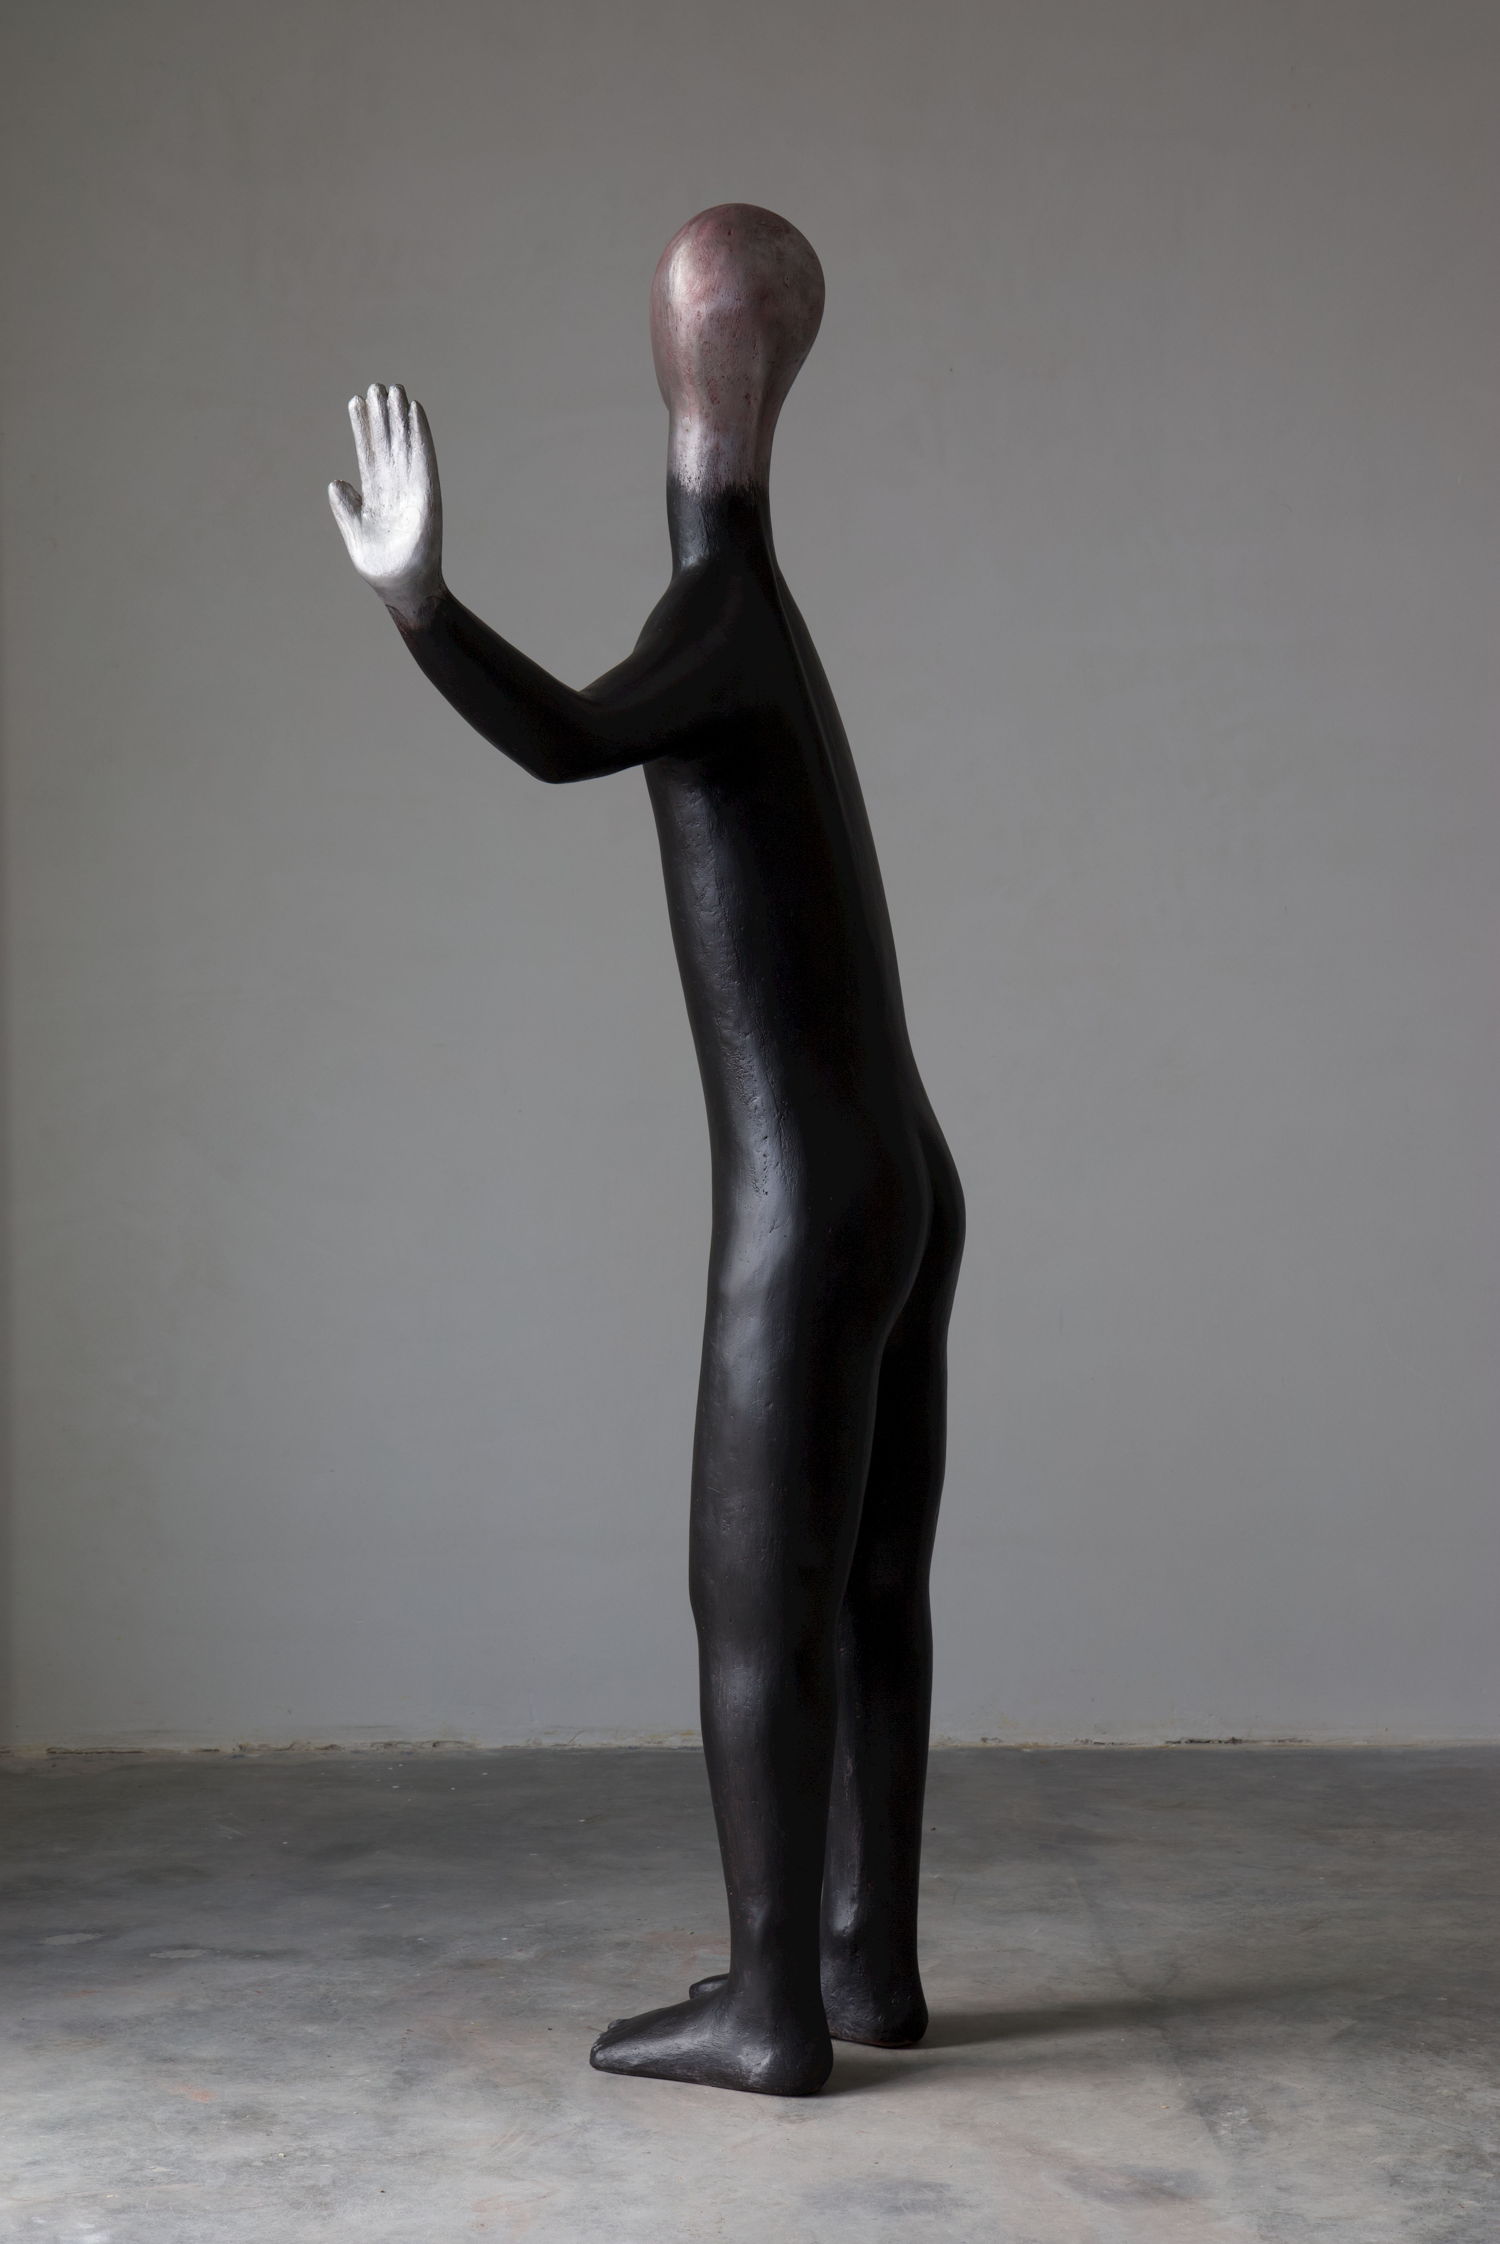 HENK VISCH, Dancing bear, 2020. bronze, rope, paint 139 x 80 x 45 cm. Courtesy Tim Van Laere Gallery, Antwerp